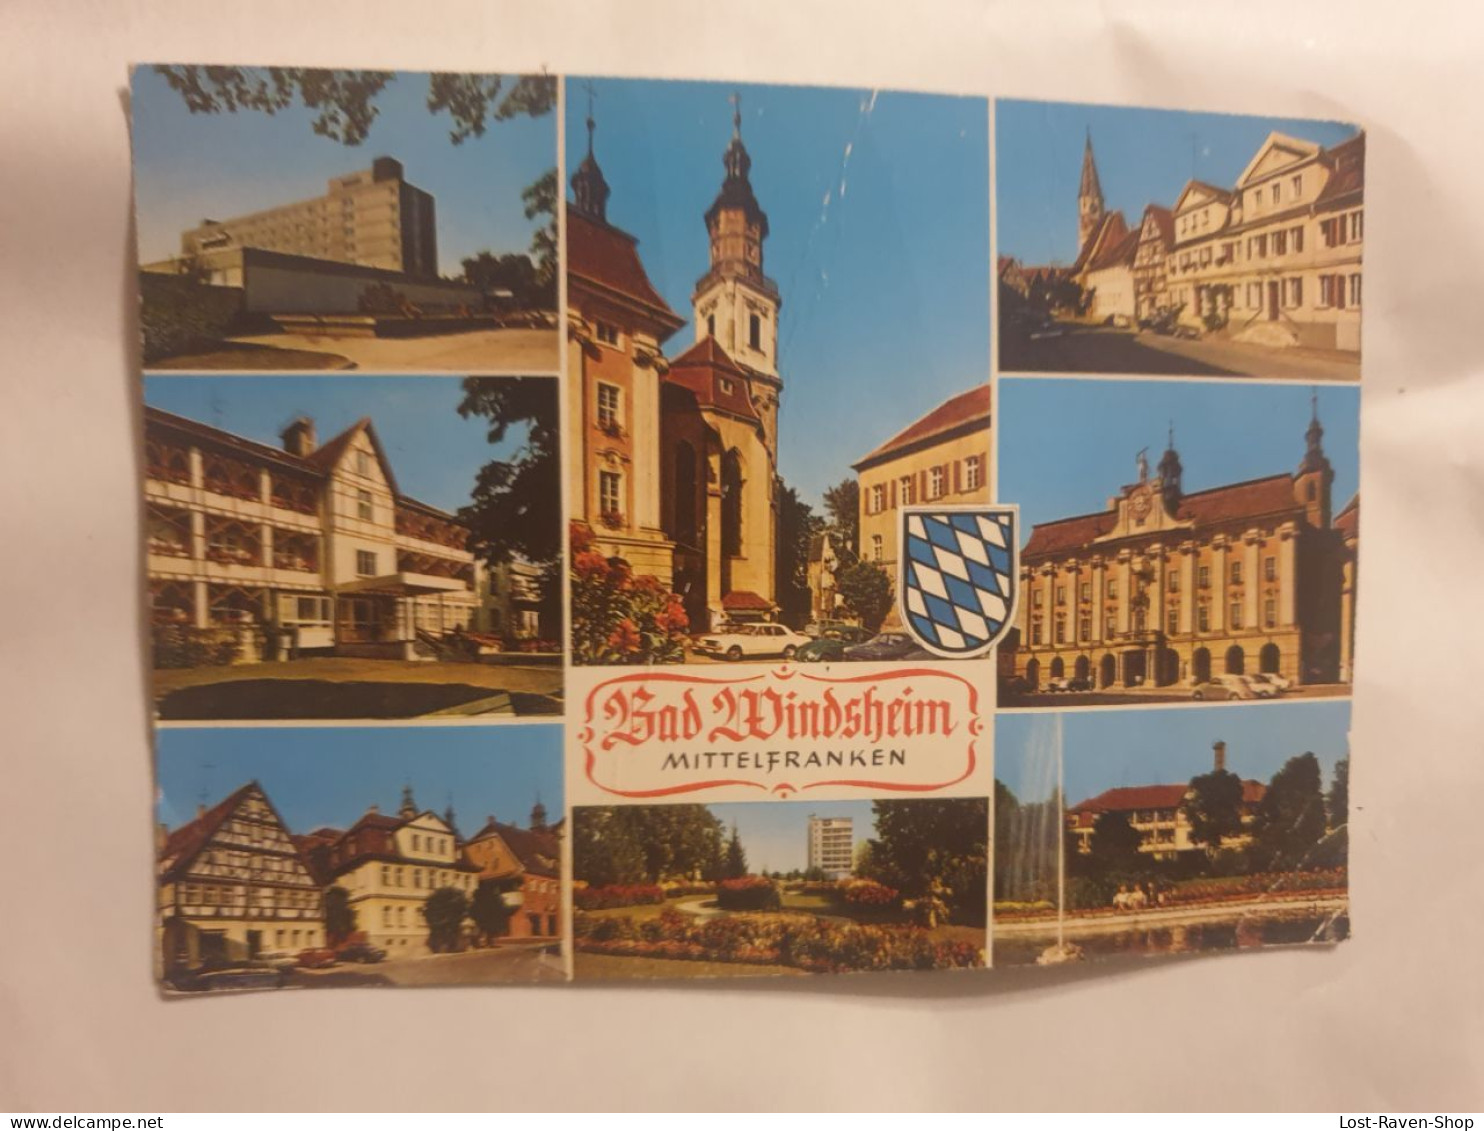 Bad Windsheim - Mittelfranken - Bad Windsheim